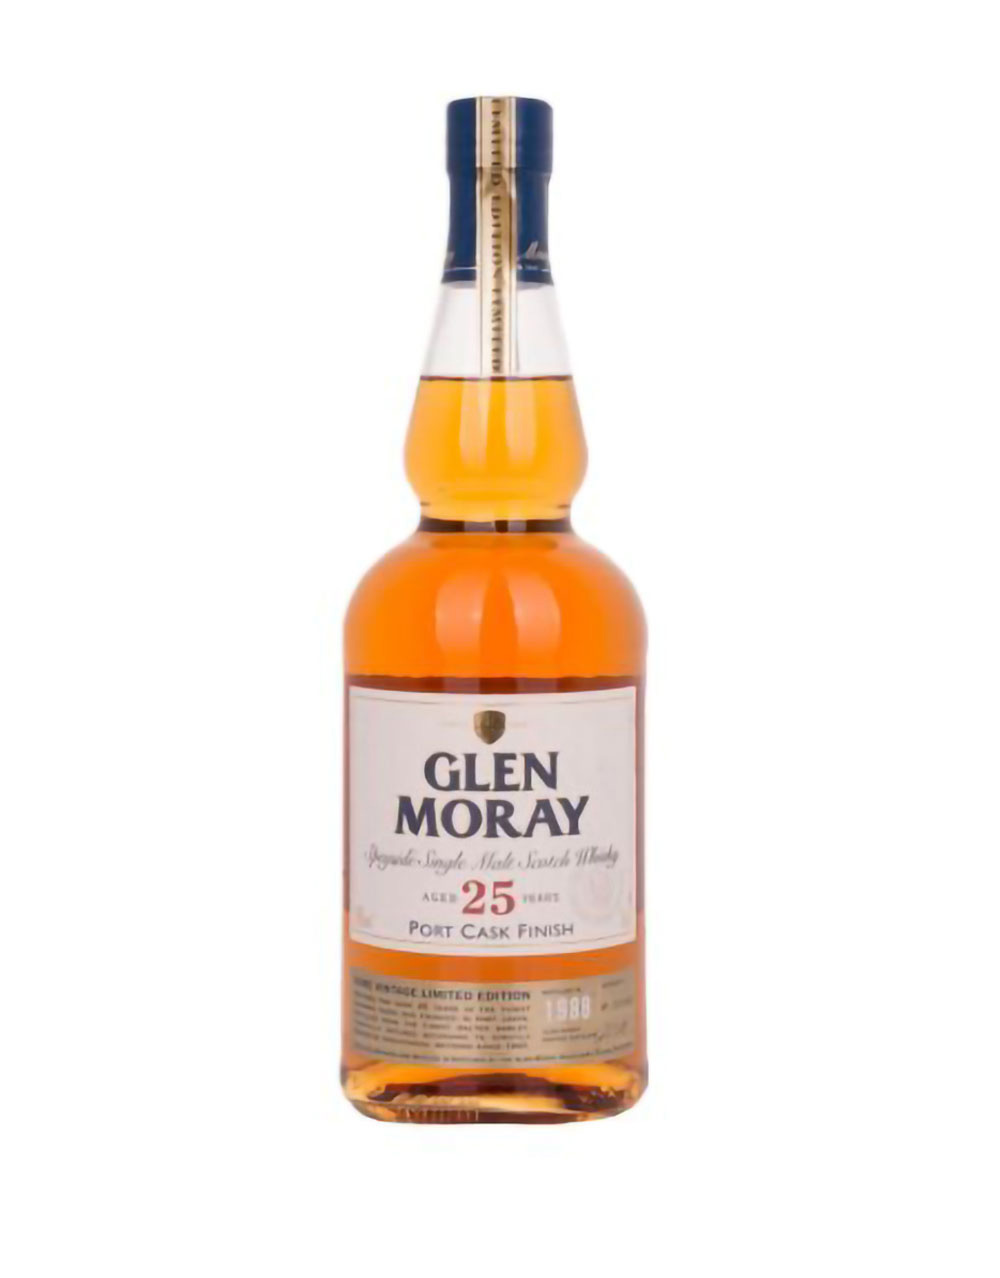 Glen Moray 25 Year Old Port Cask Finish Single Malt Scotch Whisky